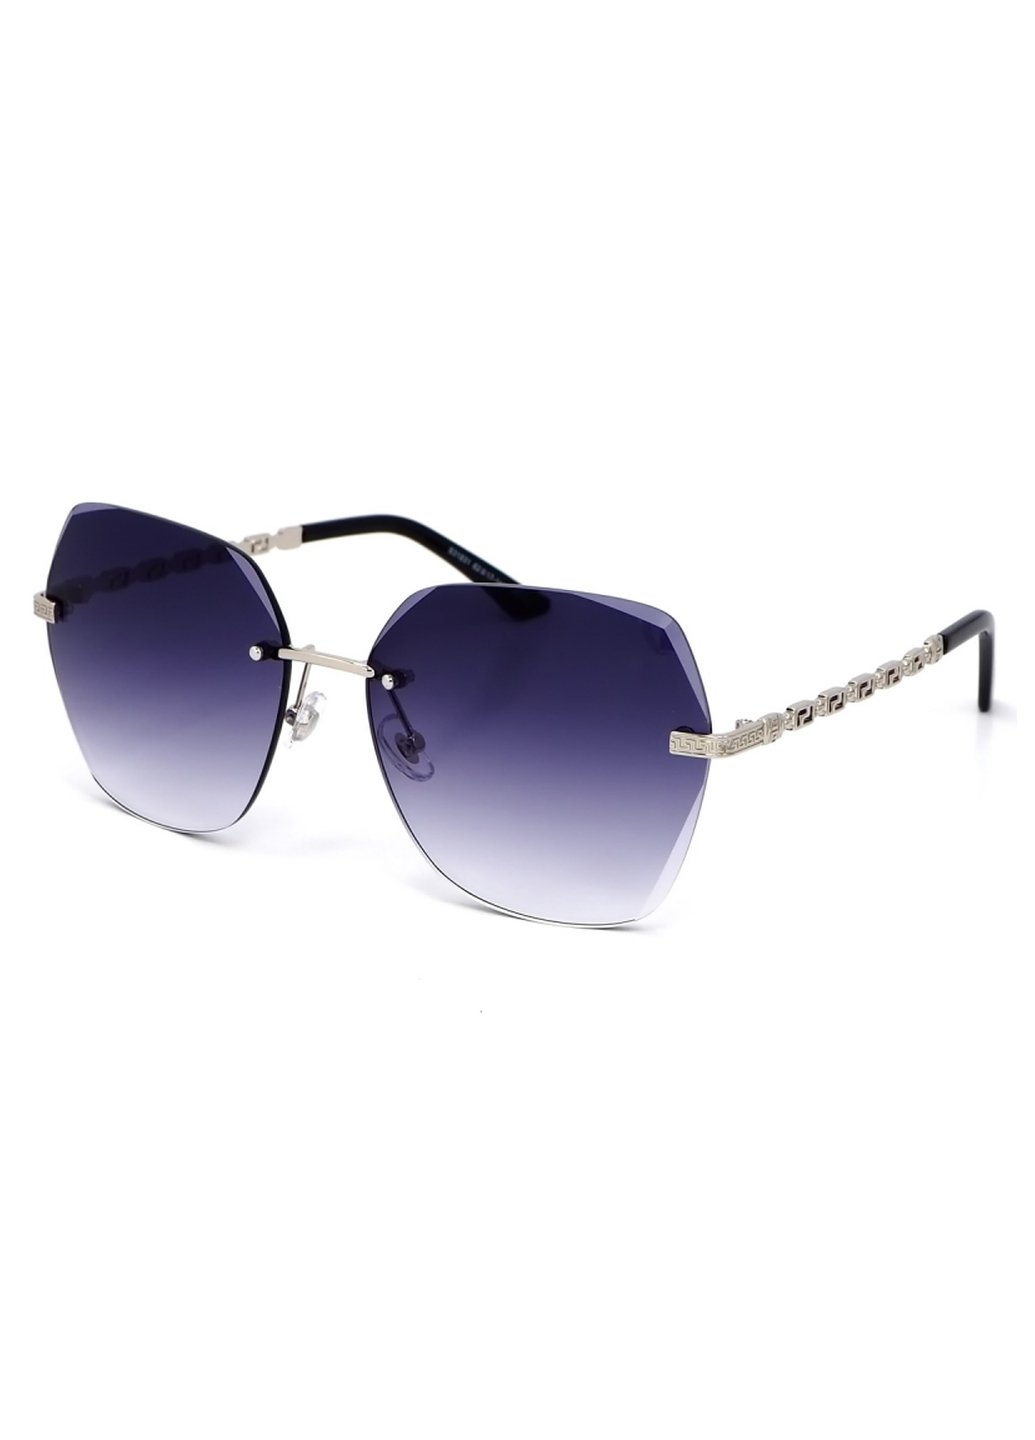 Купить Женские солнцезащитные очки Merlini с поляризацией S31831 117086 - Серый в интернет-магазине